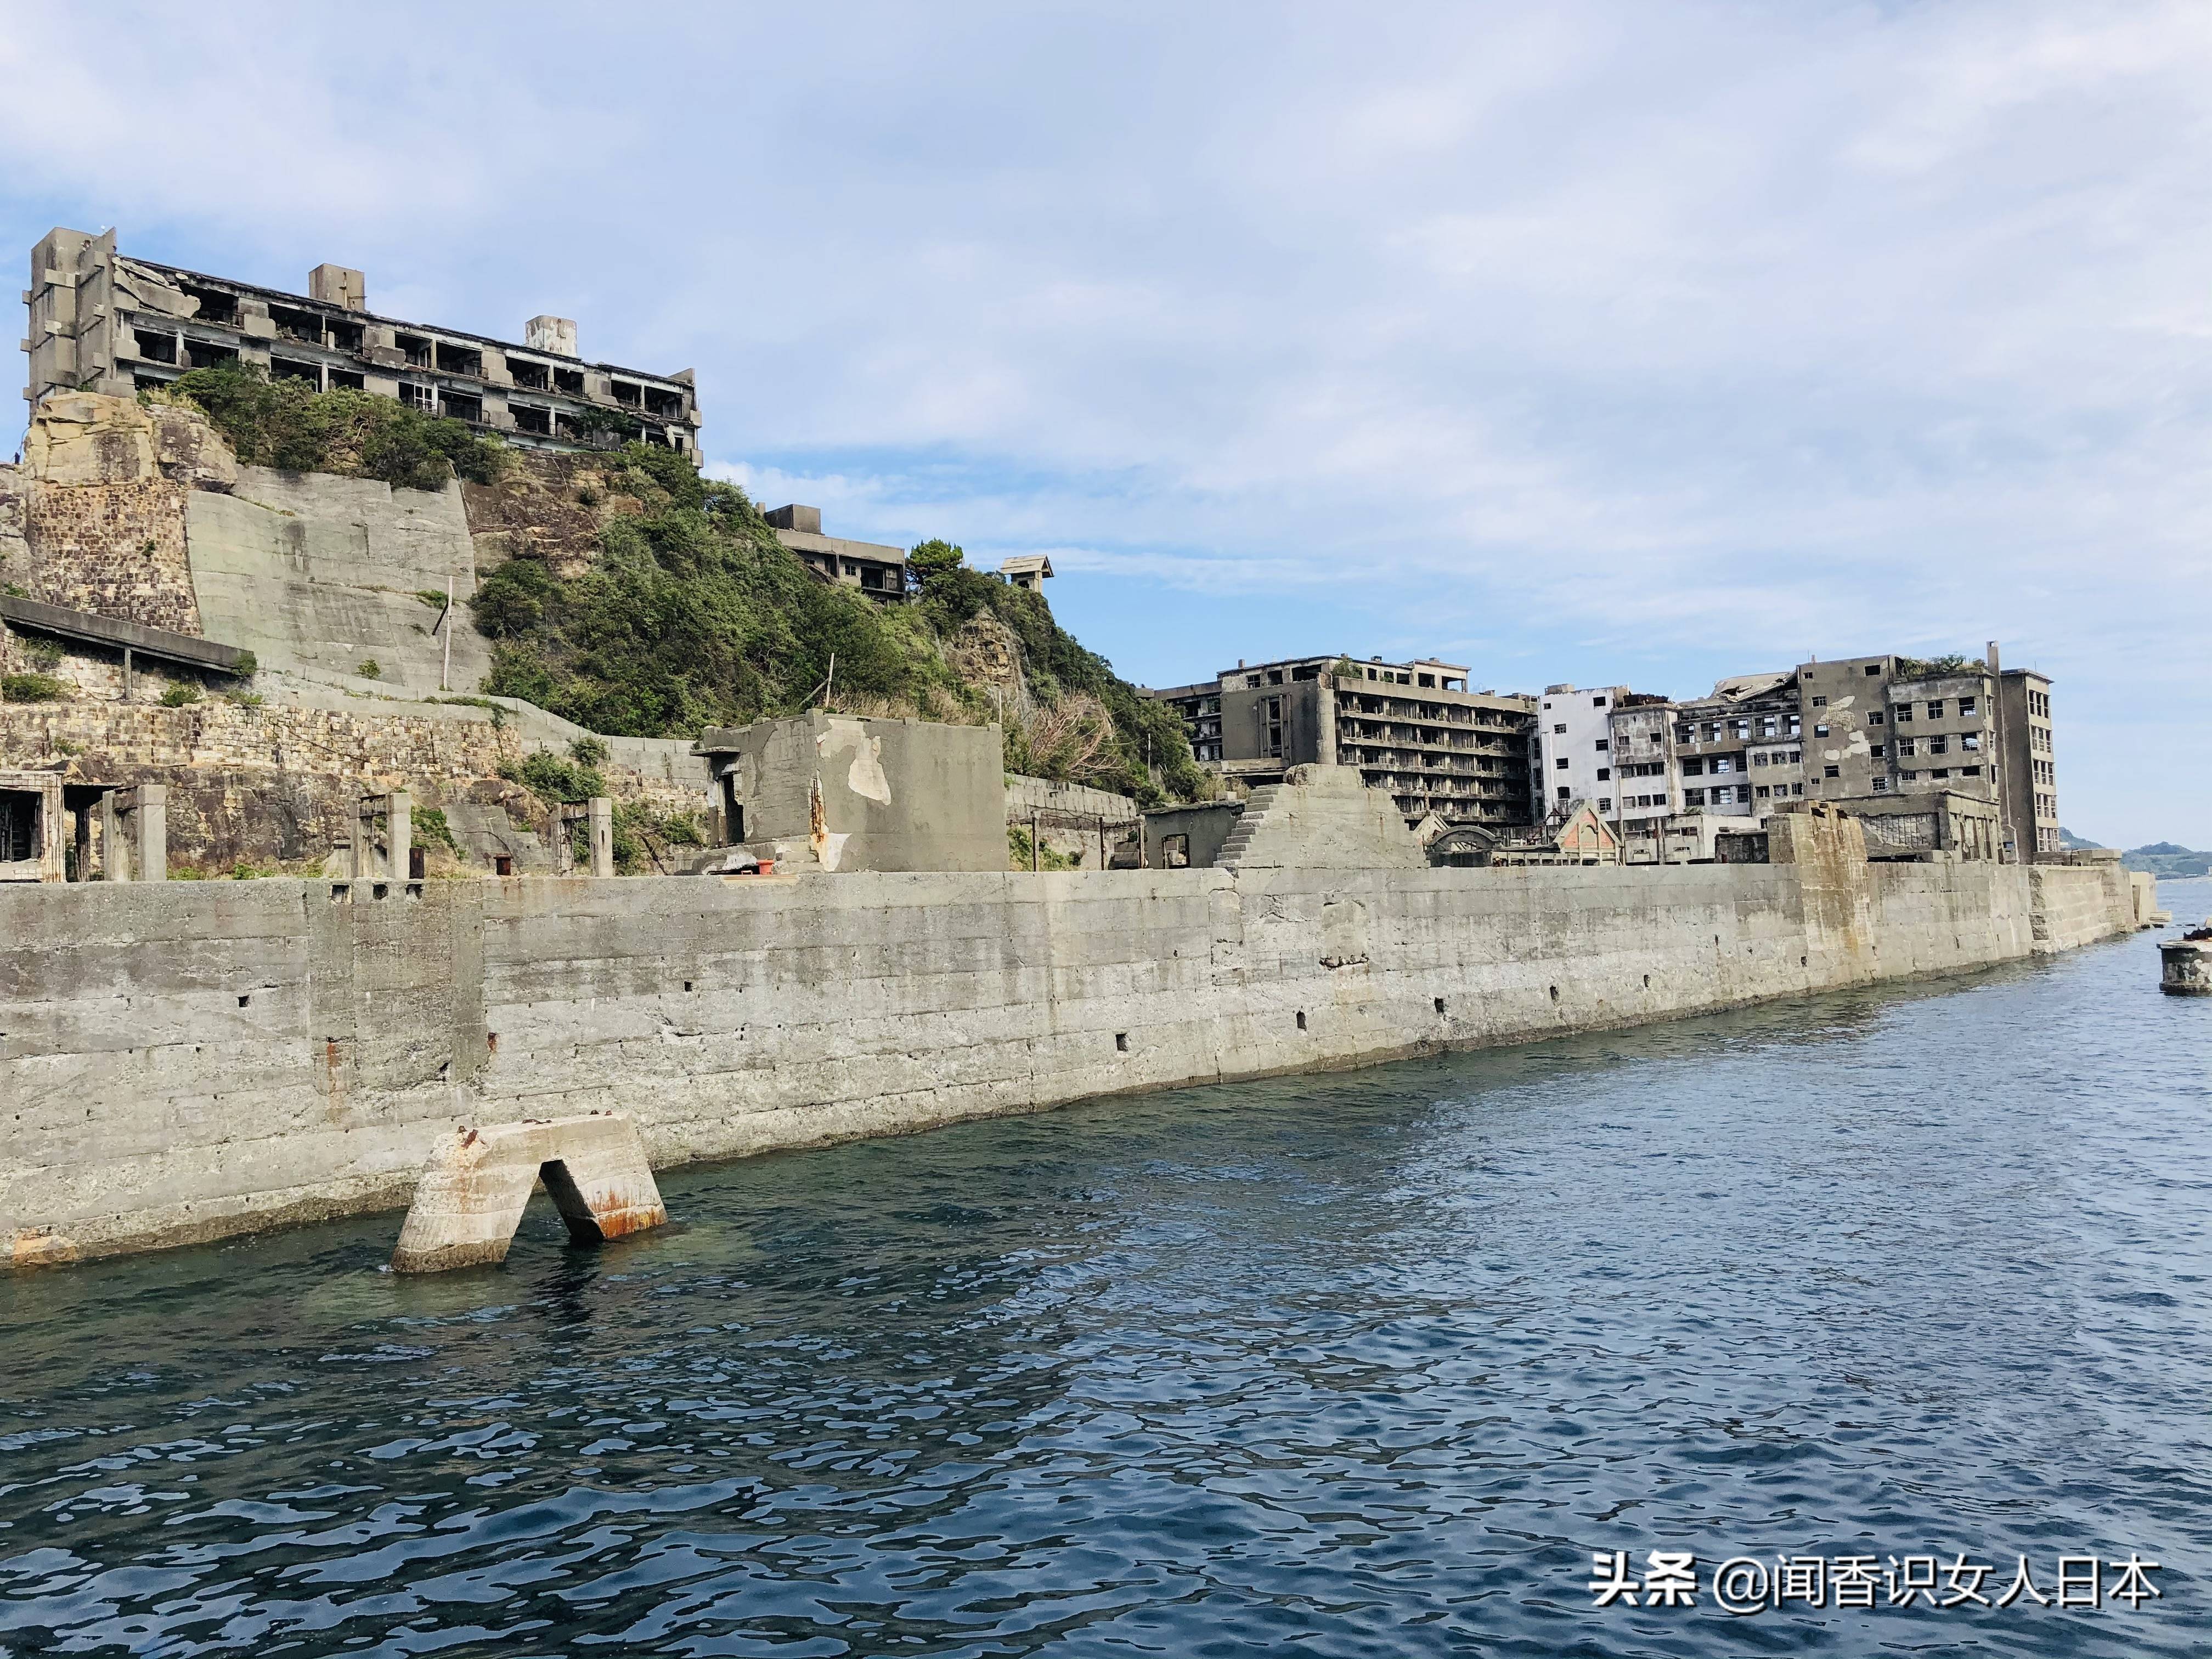 日本军舰岛,一座废弃的无人岛,现在是热门观光地,岛上废墟遍地